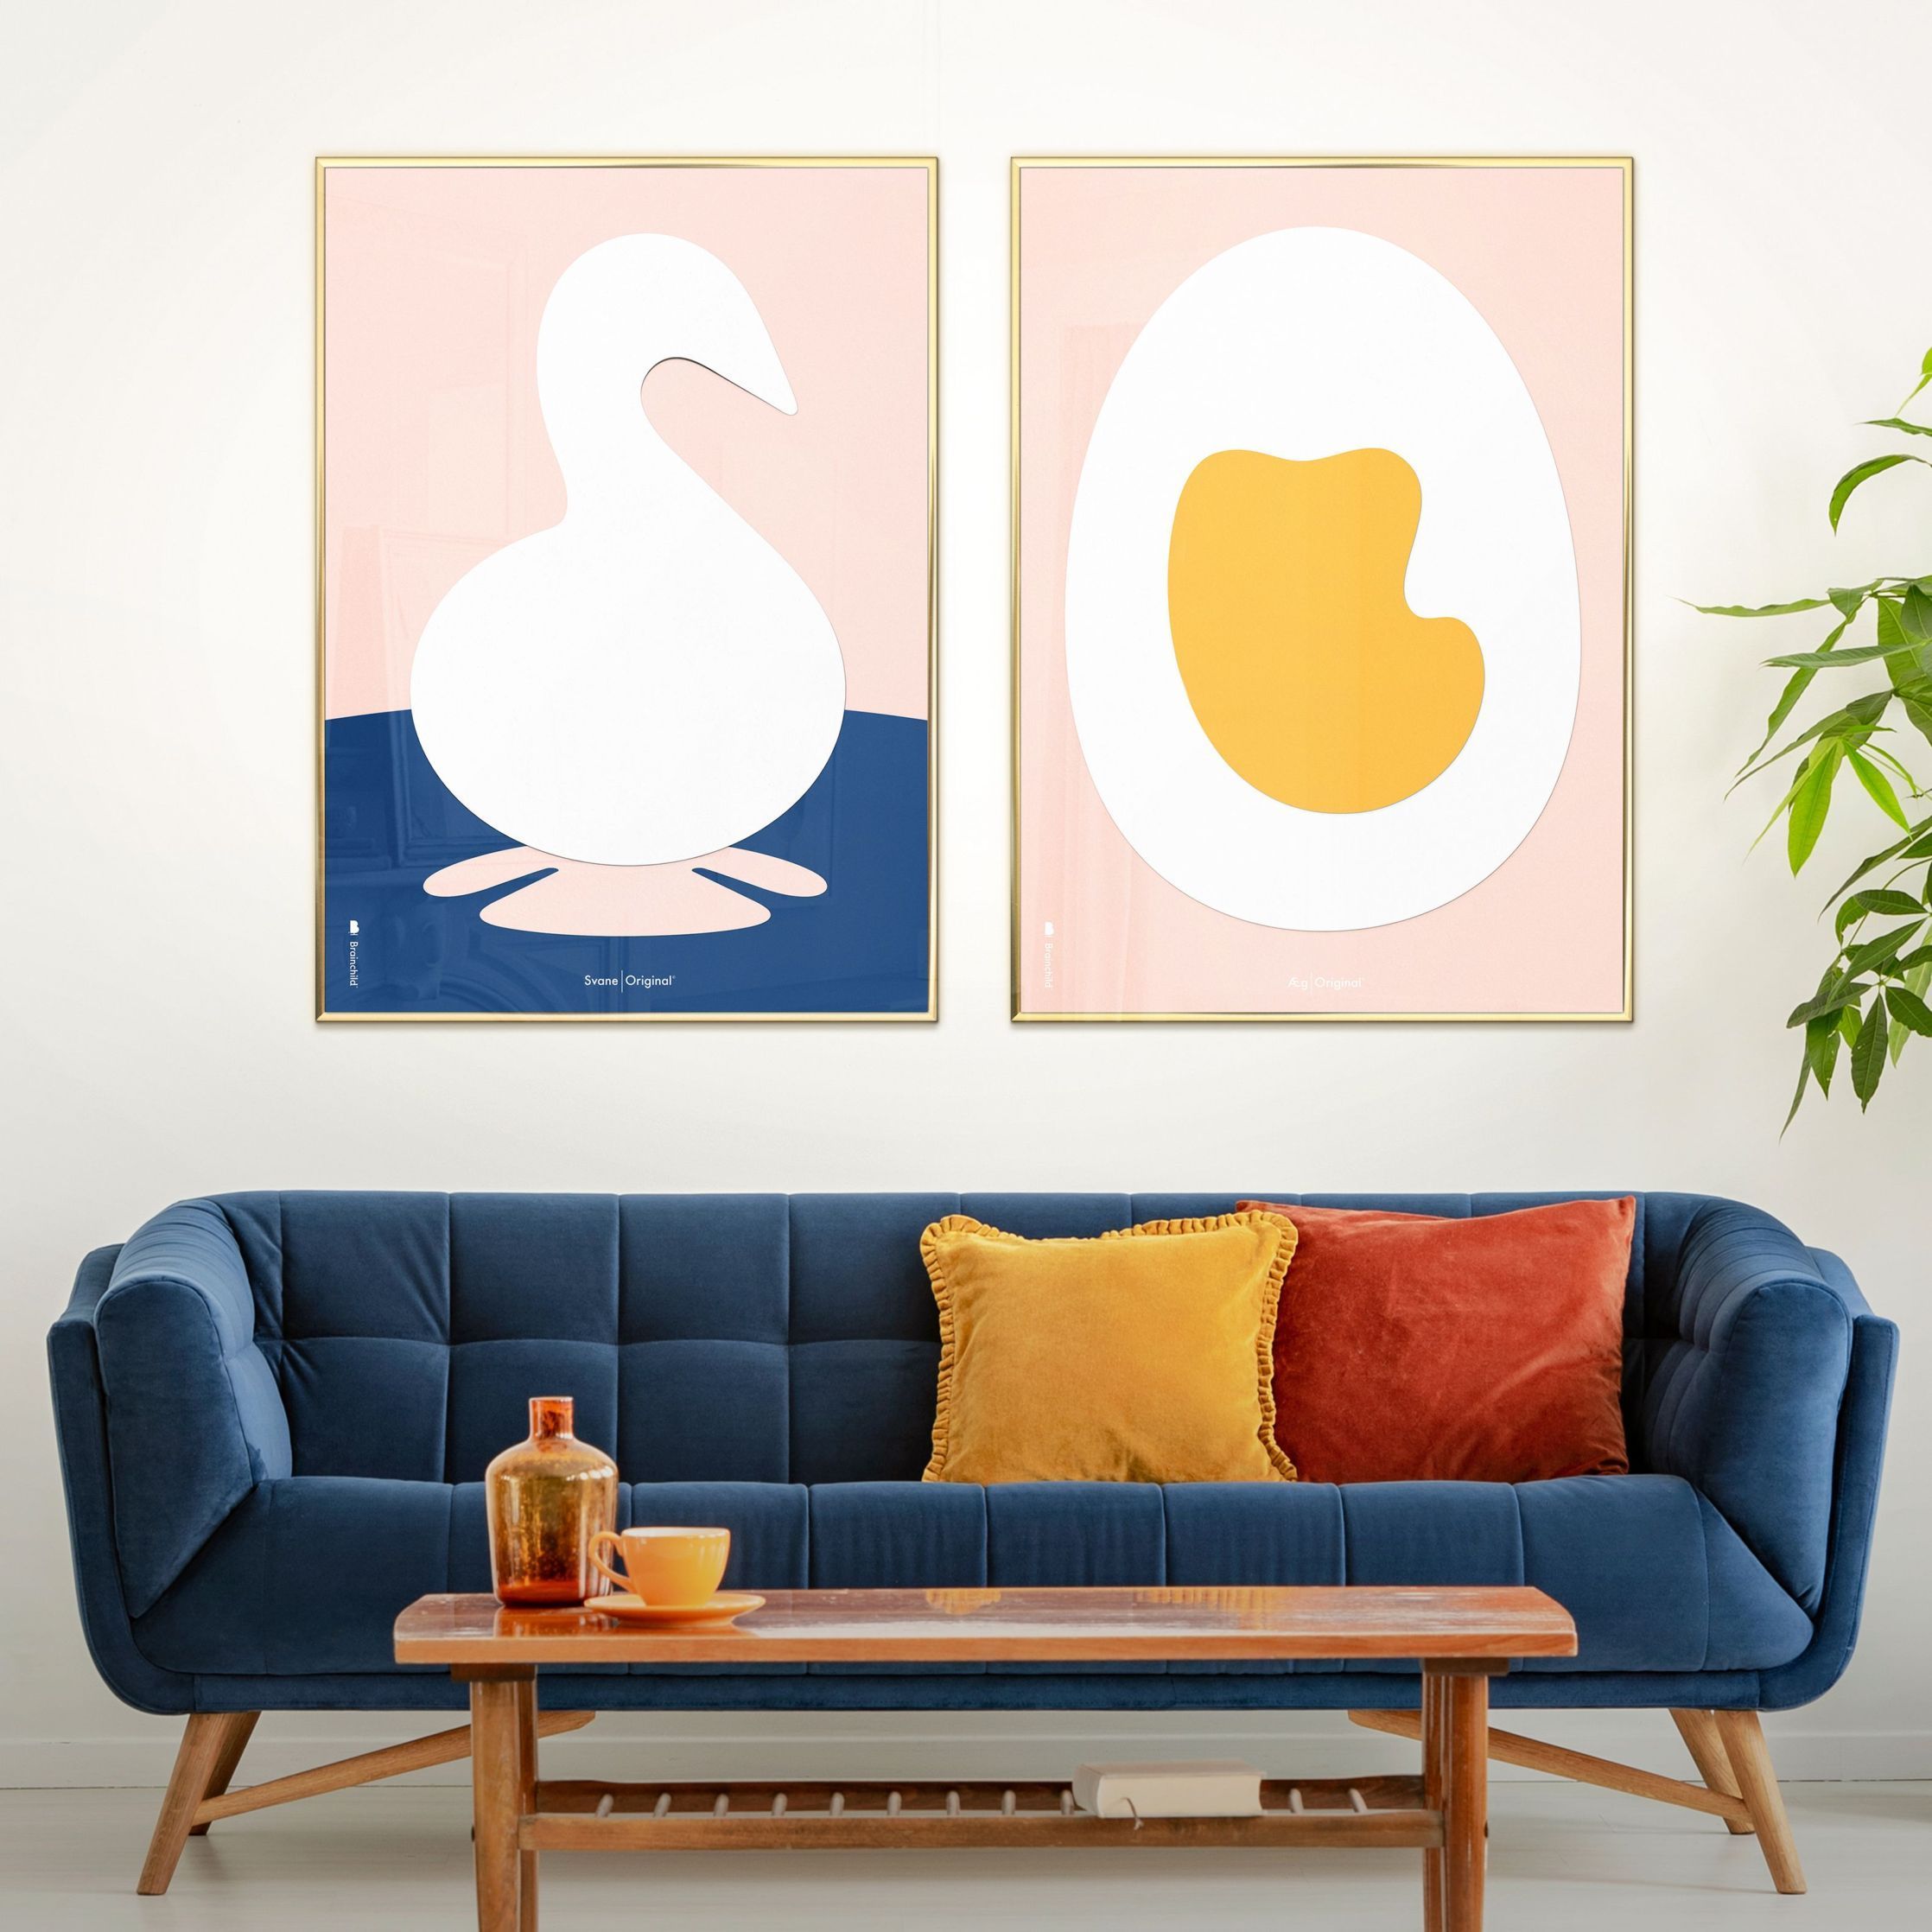 Brainchild Swan Paper Clip Poster zonder frame 30 x40 cm, roze achtergrond